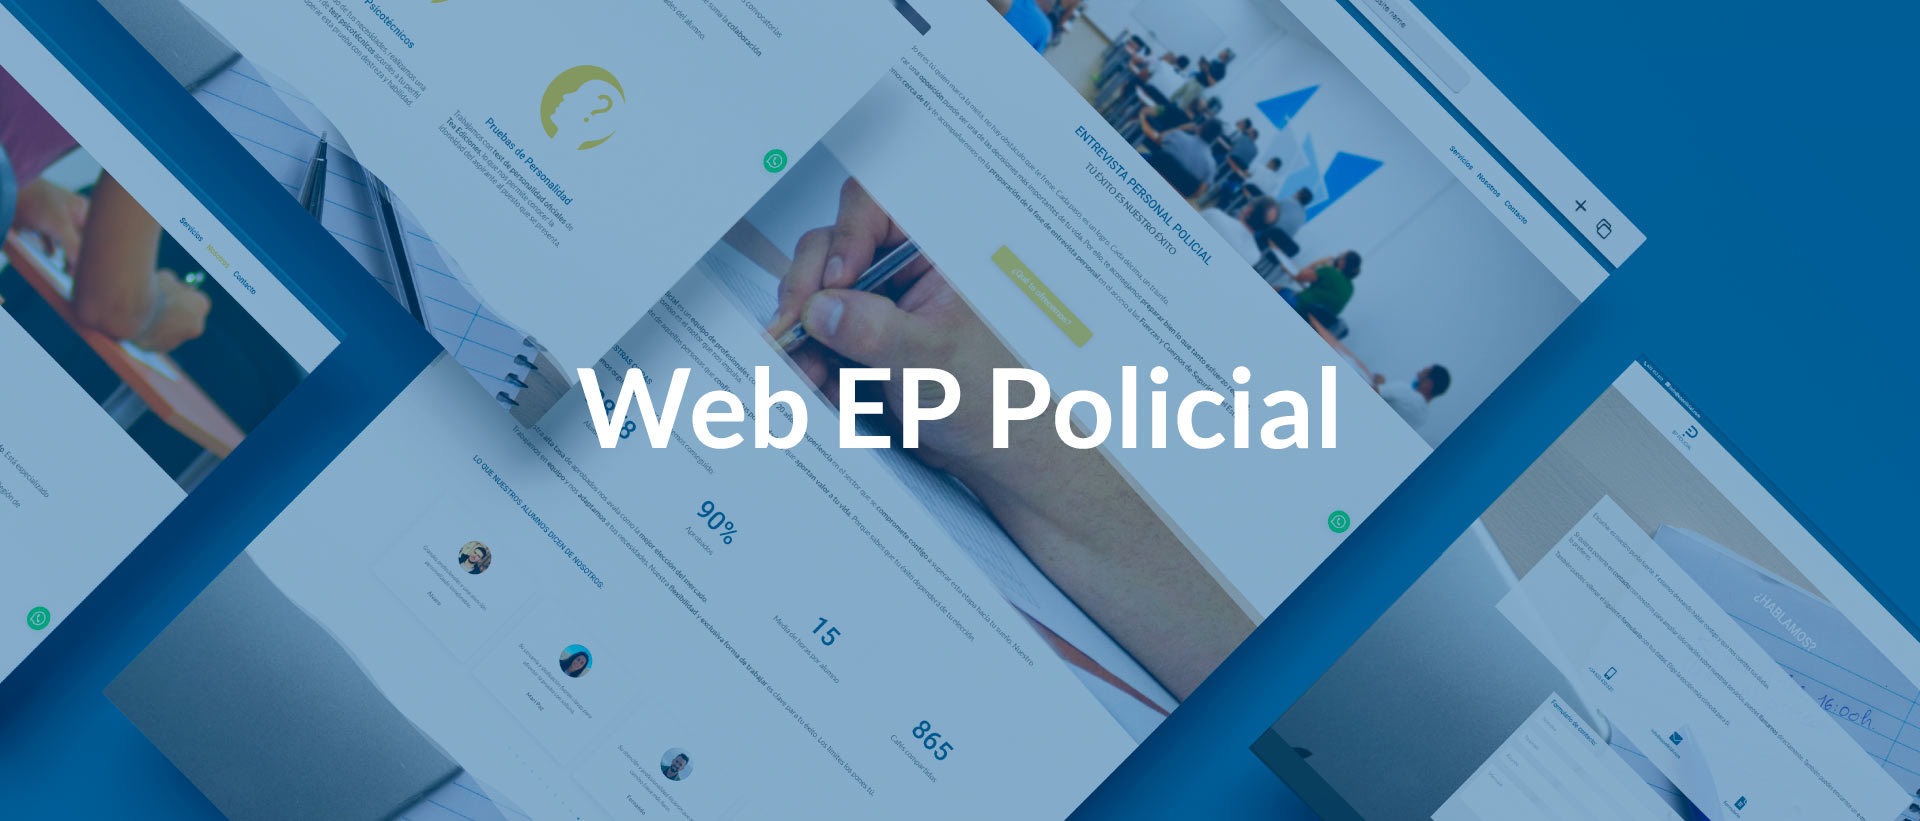 Pantallazos de la web EPP